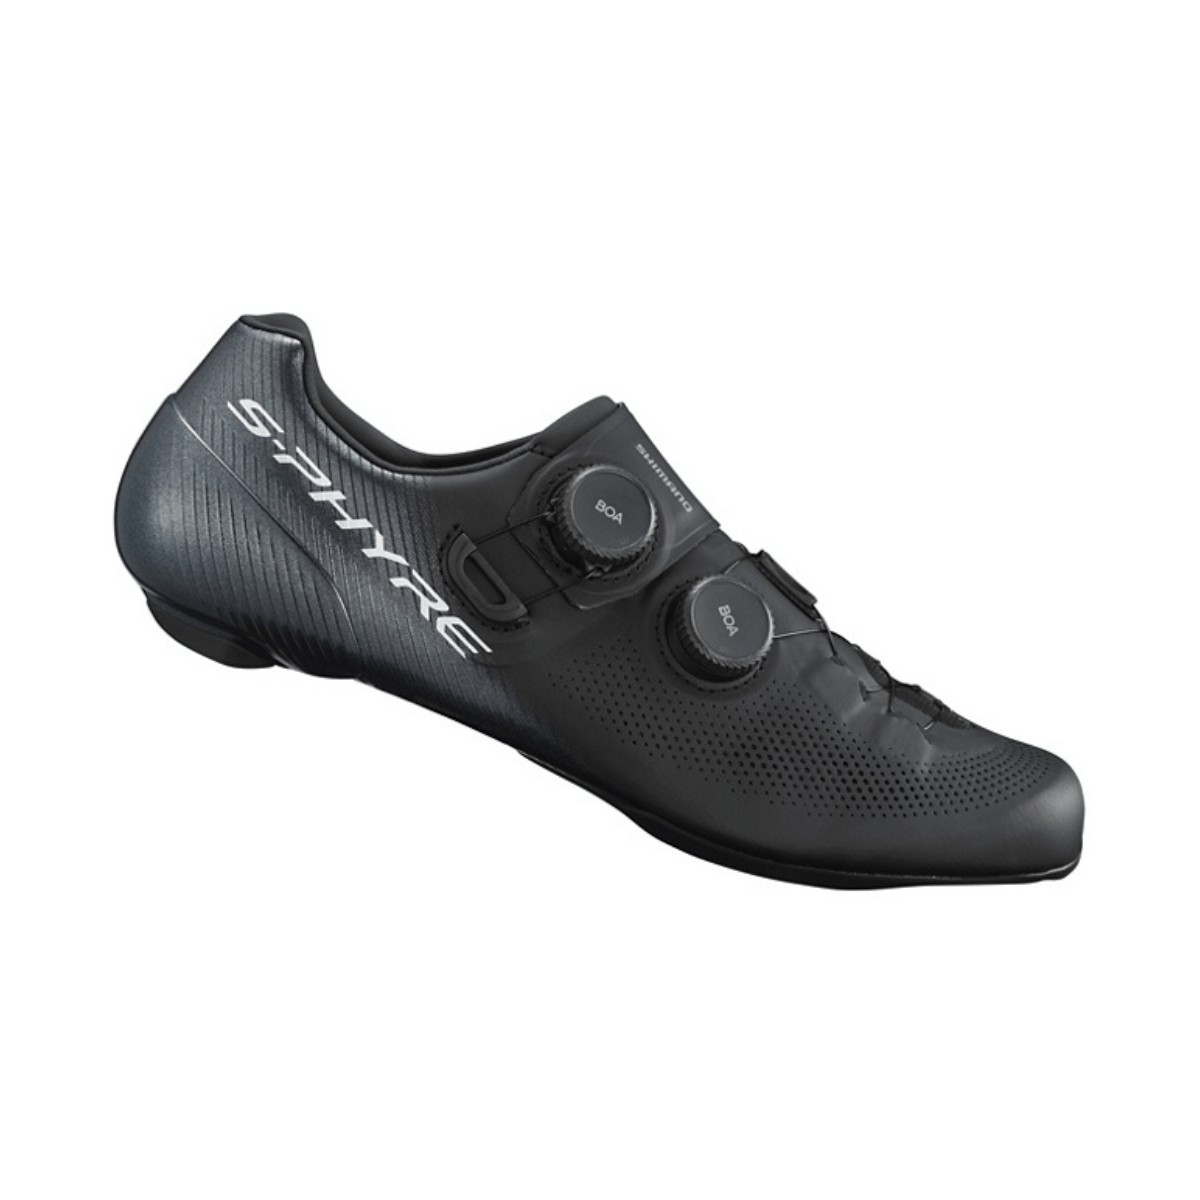 Schuhe Shimano RC903 S-PHYRE Schwarz, Größe 46,5 - EUR